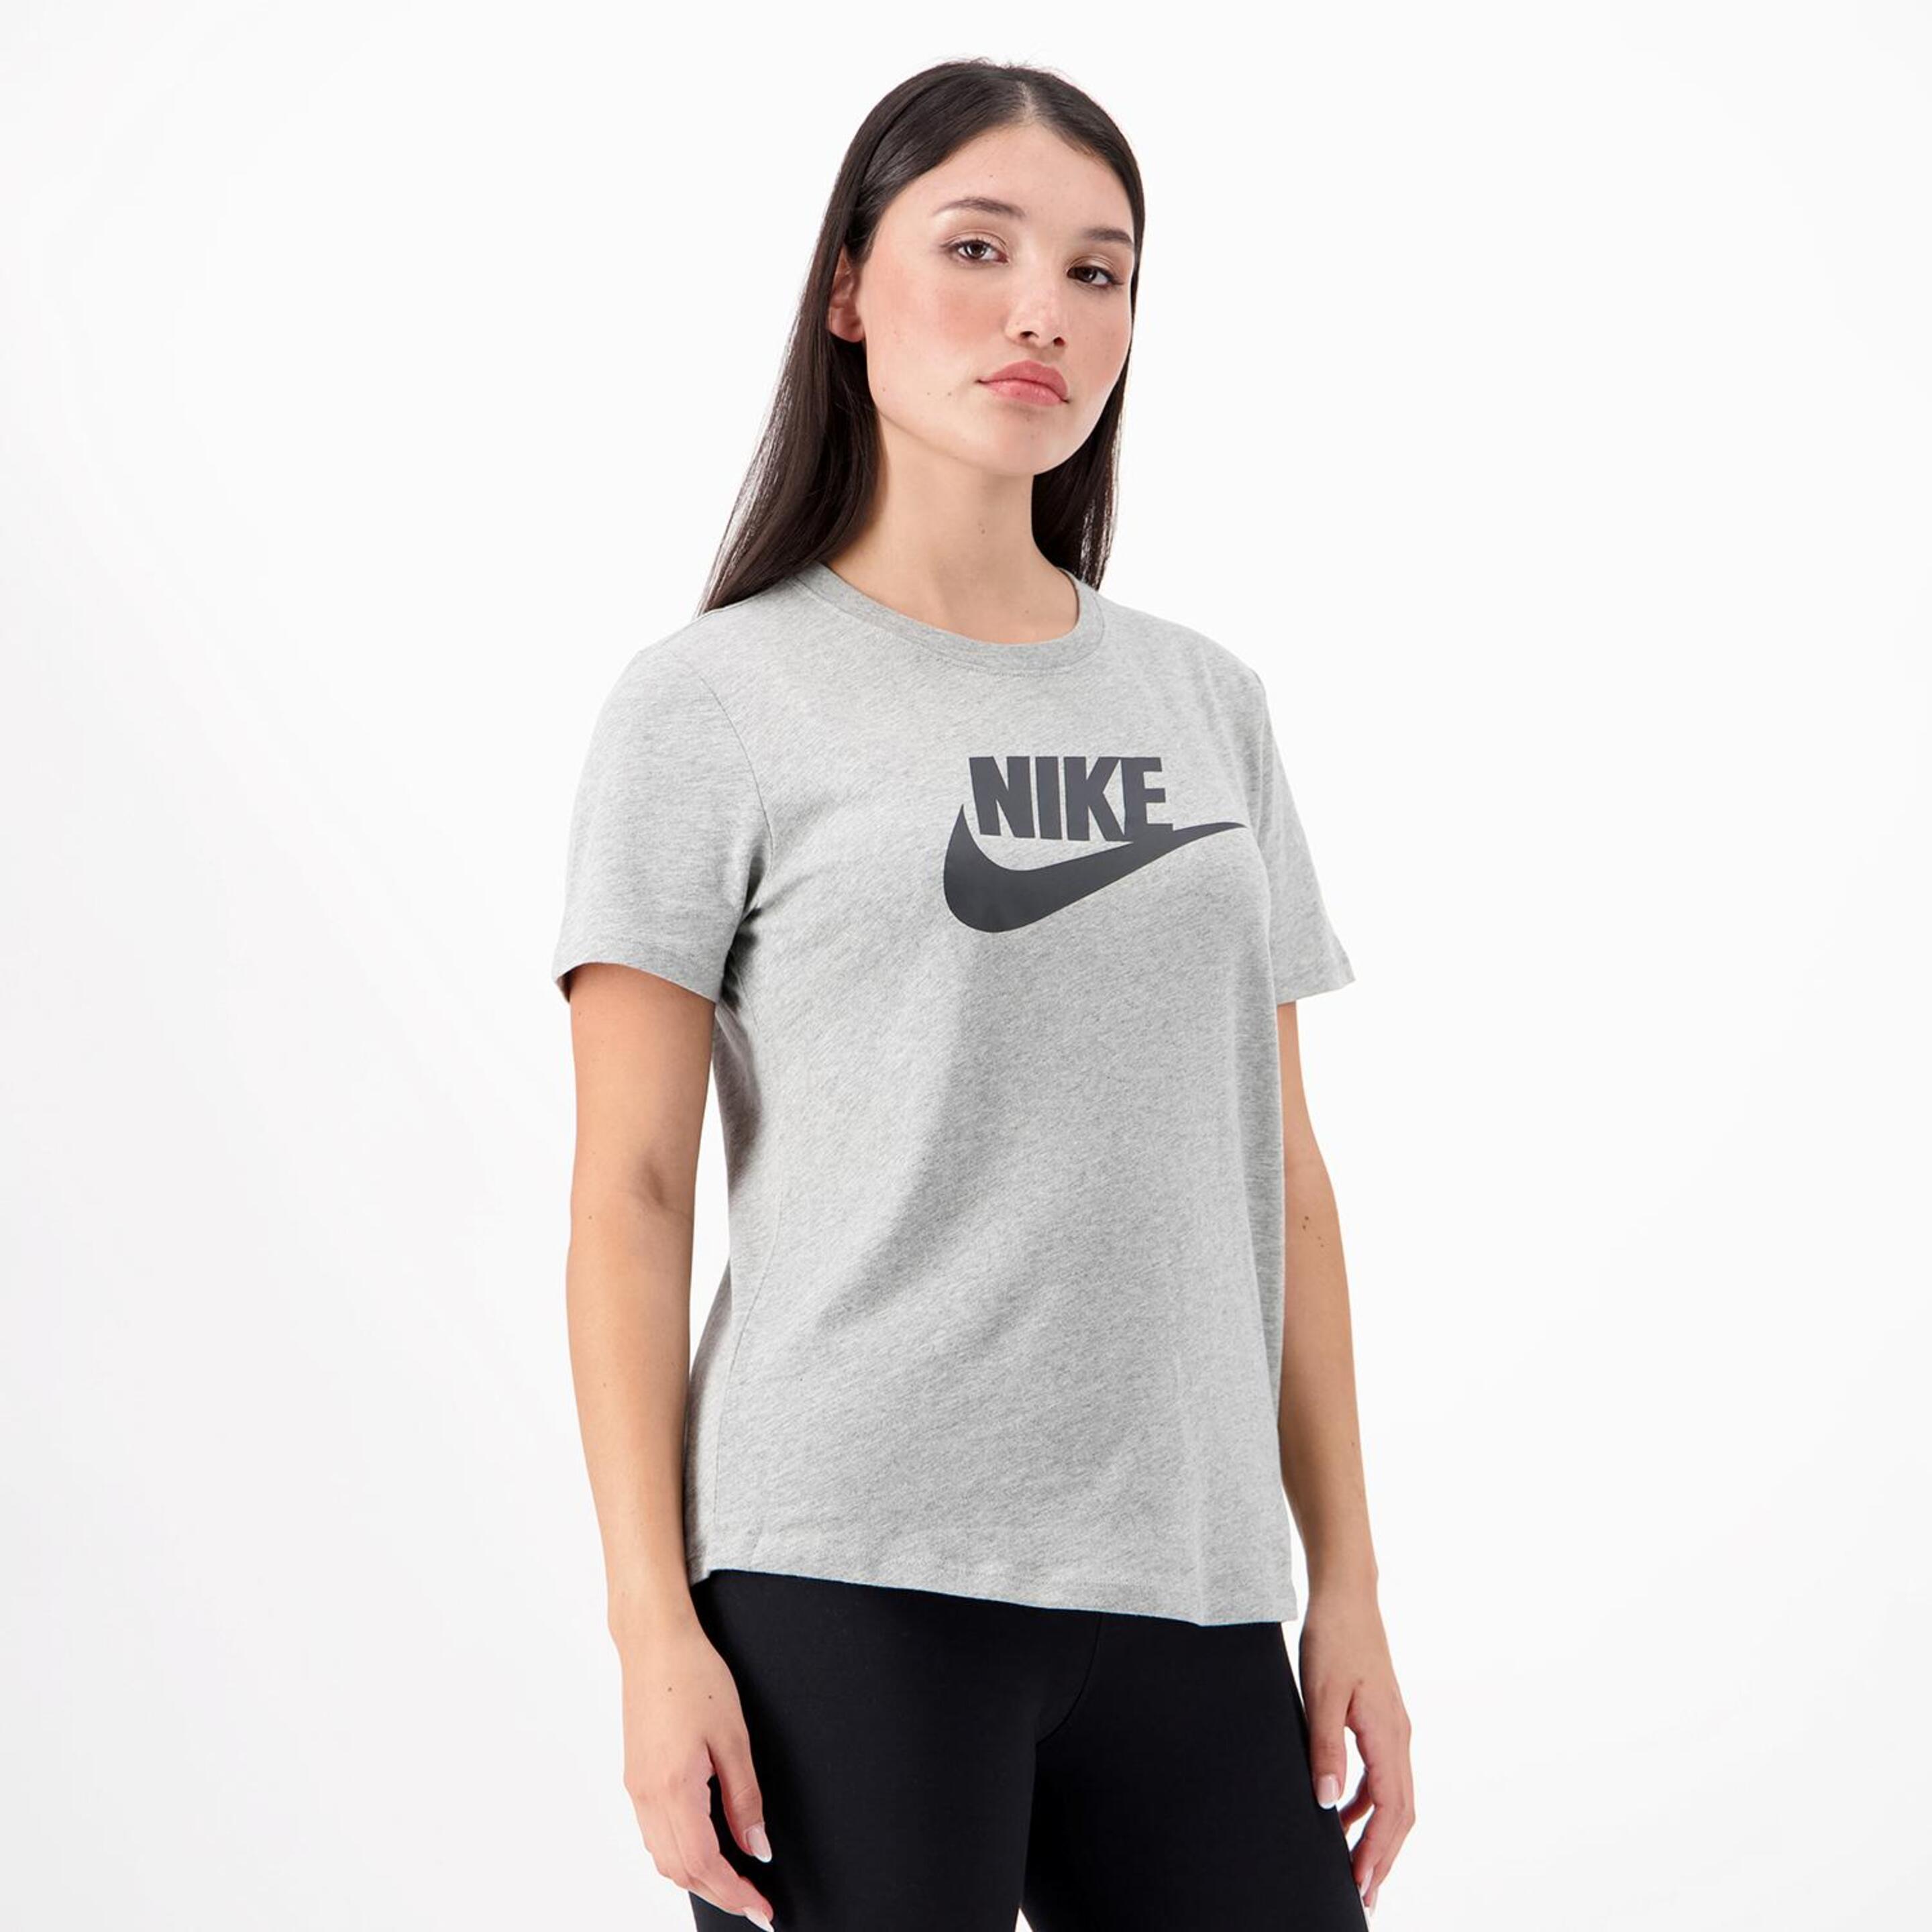 Camiseta Nike - Gris - Camiseta Mujer